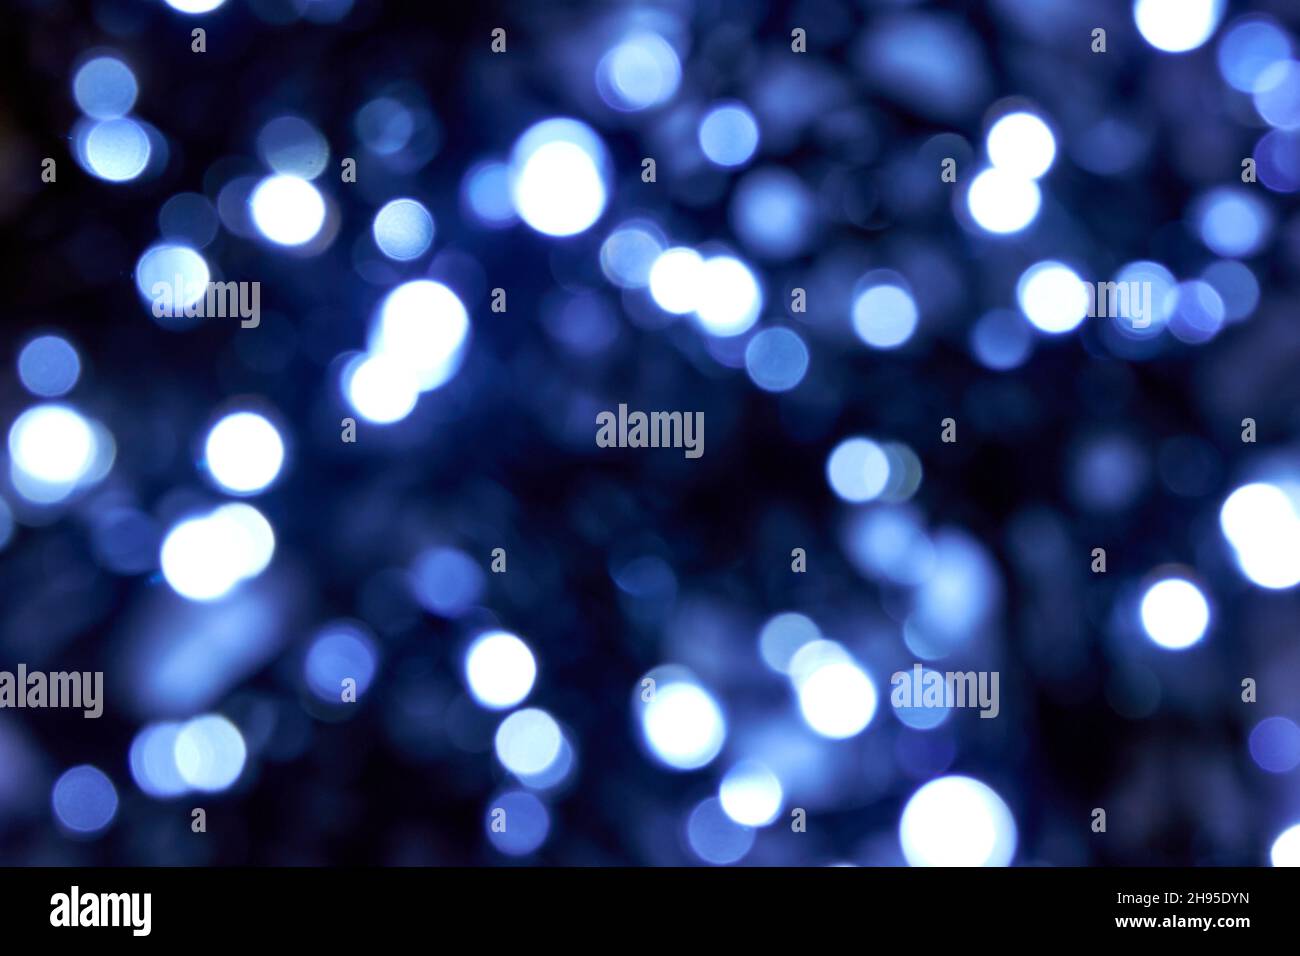 Kaltblaue Farbe. weihnachtliche weiße und blaue Lichter auf schwarzem Hintergrund. Verschwommene abstrakte blaue Glitzerstruktur. Verwischen Sie Bokeh-Glitzer. Stockfoto